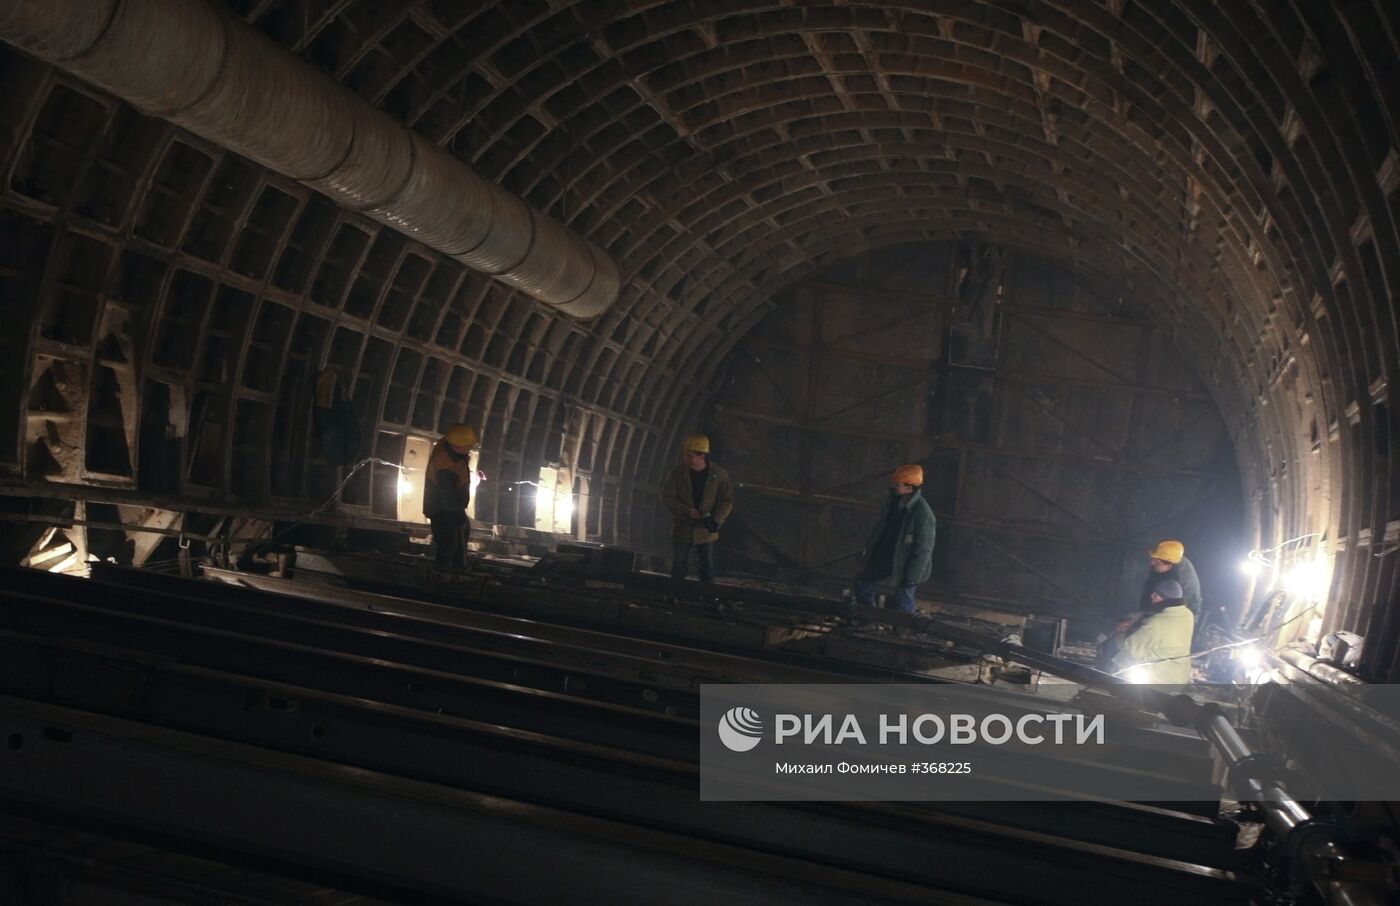 Строительство новой станции Московского метро "Достоевская"